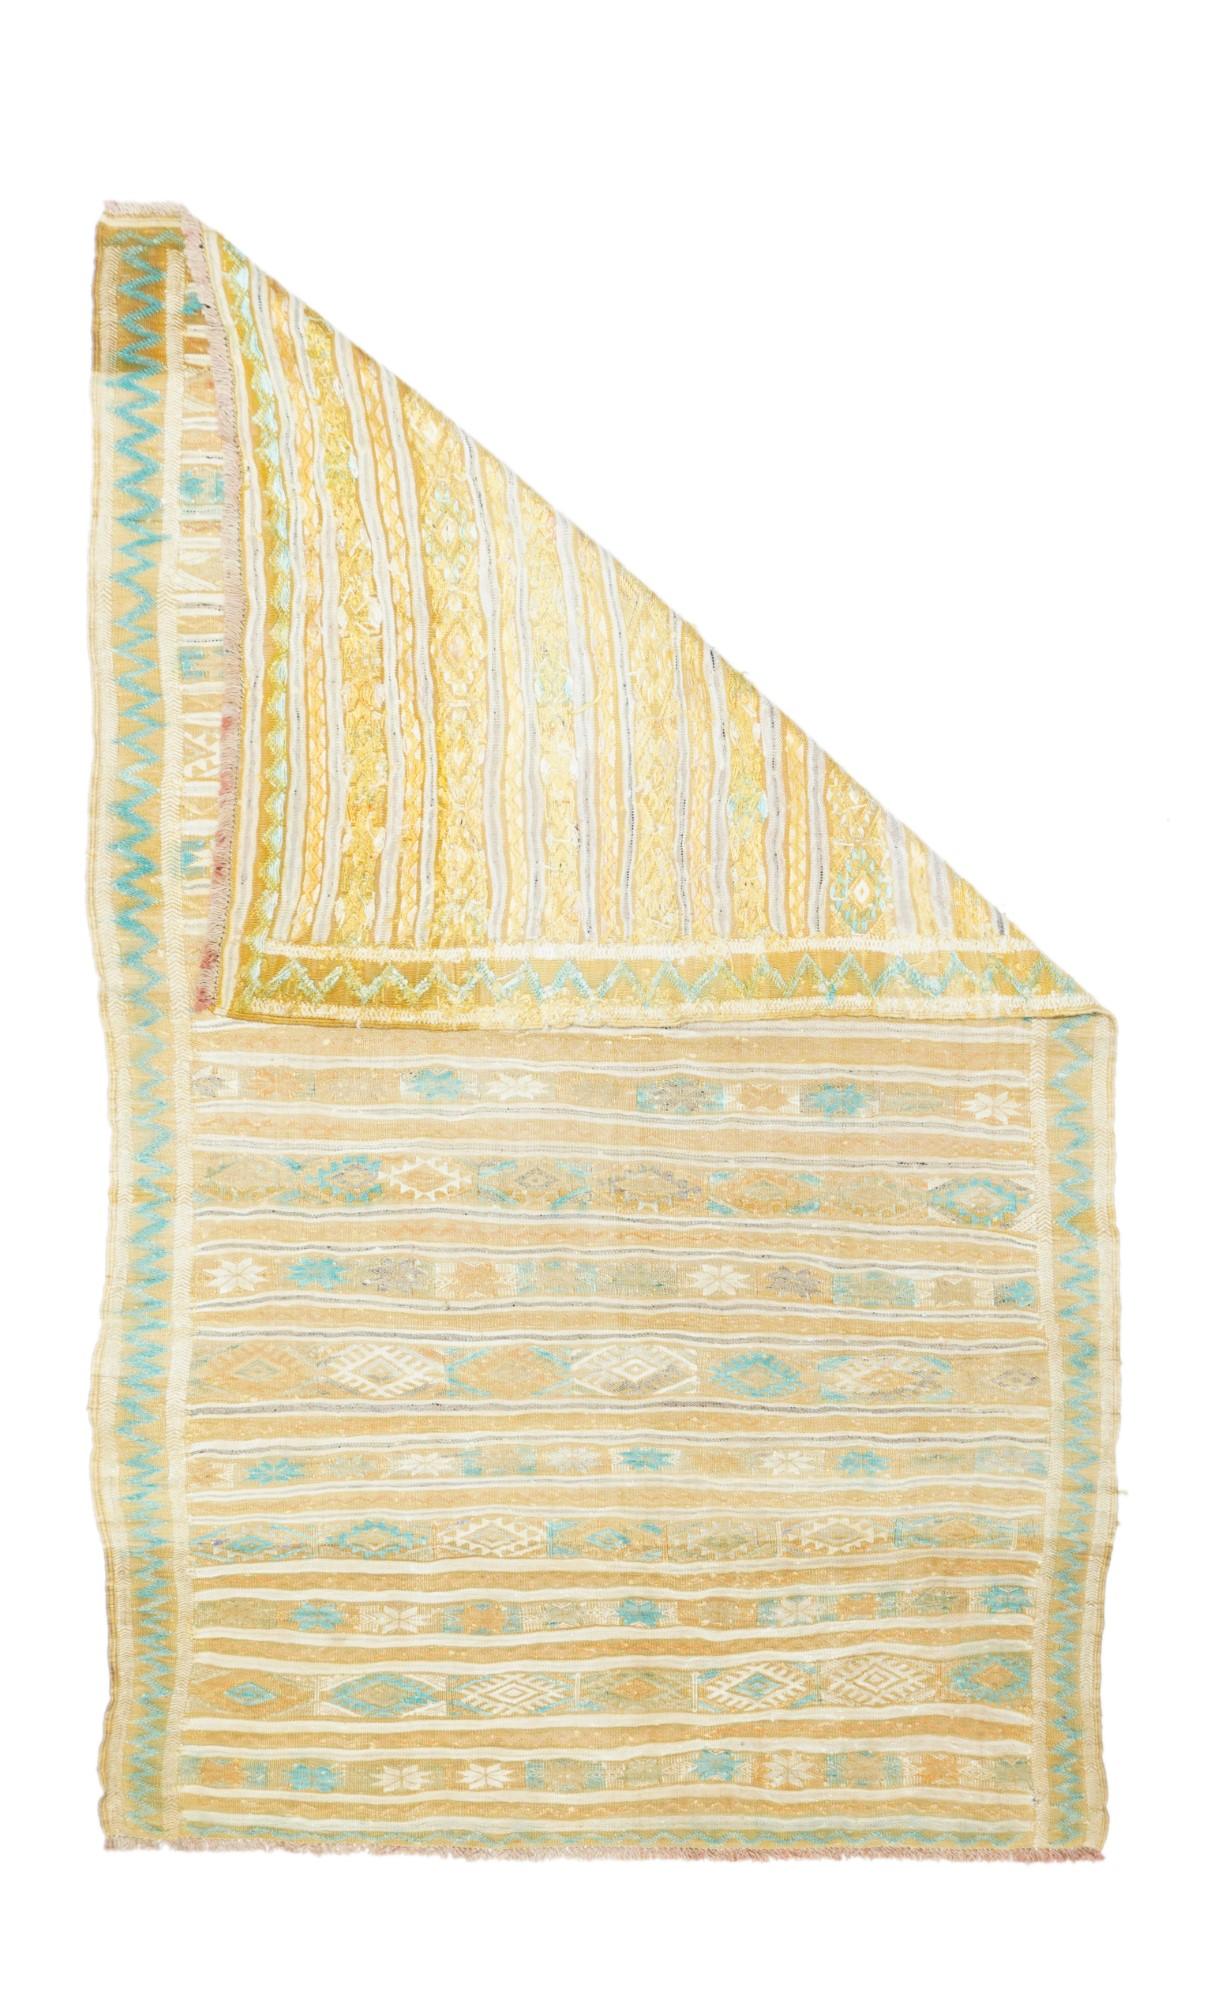 Vintage Kilim Teppich 3'2'' x 5'8''. Dieses rustikale Textil zeigt unregelmäßige horizontale Streifen in Rost, Creme und Hellblau, die durch ein Fischgrätenmuster in Creme und Hellblau bereichert werden. Kettfaden aus Baumwolle, Schussfaden aus